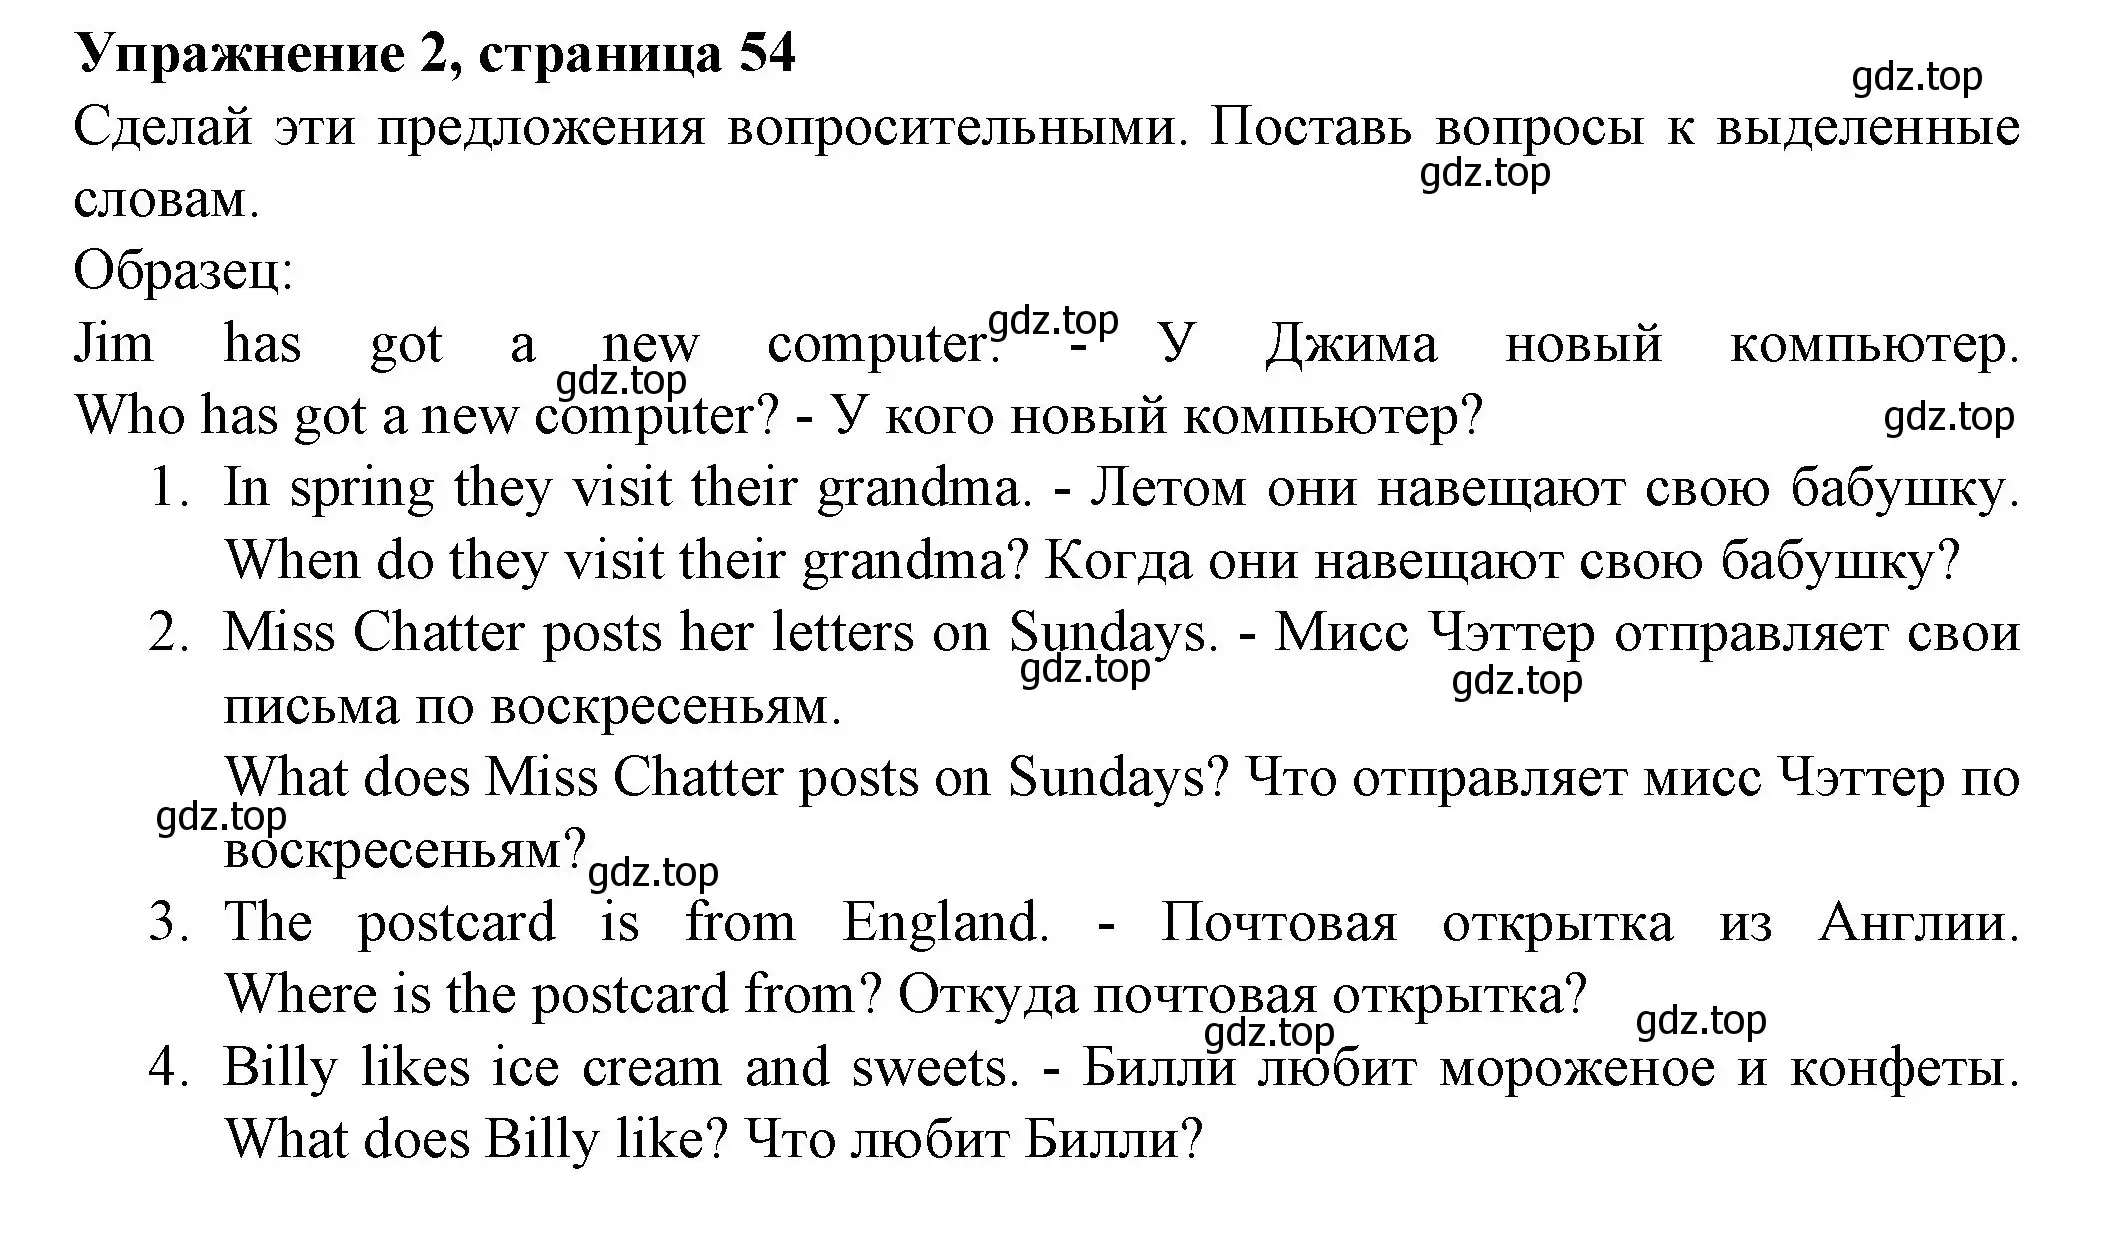 Решение номер 2 (страница 54) гдз по английскому языку 3 класс Биболетова, Денисенко, рабочая тетрадь